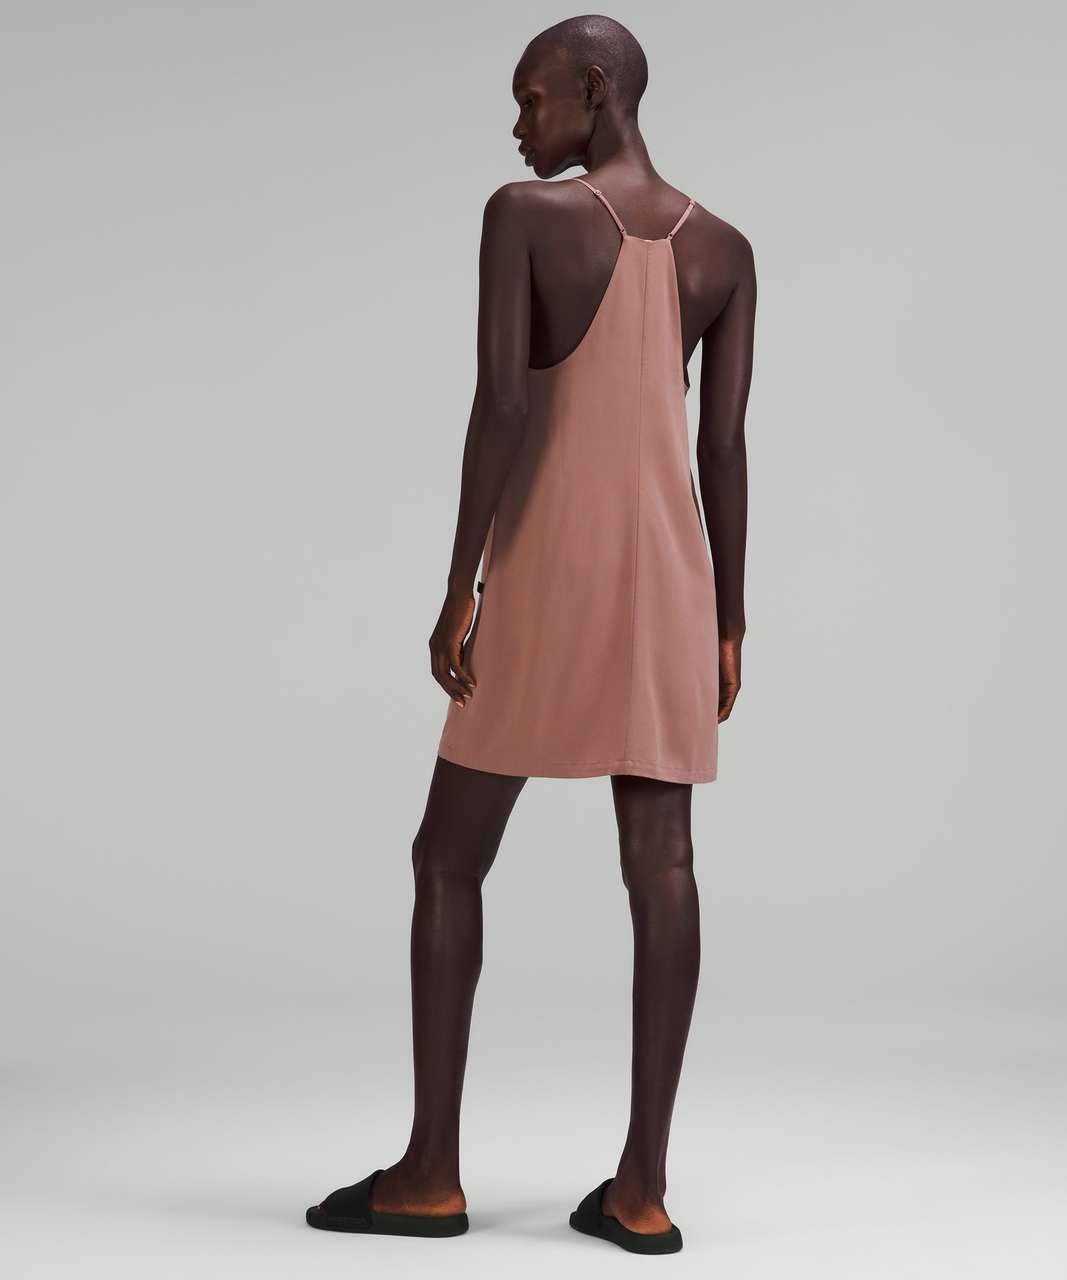 Lululemon lab Adjustable Thin Strap Dress - Twilight Mauve - lulu